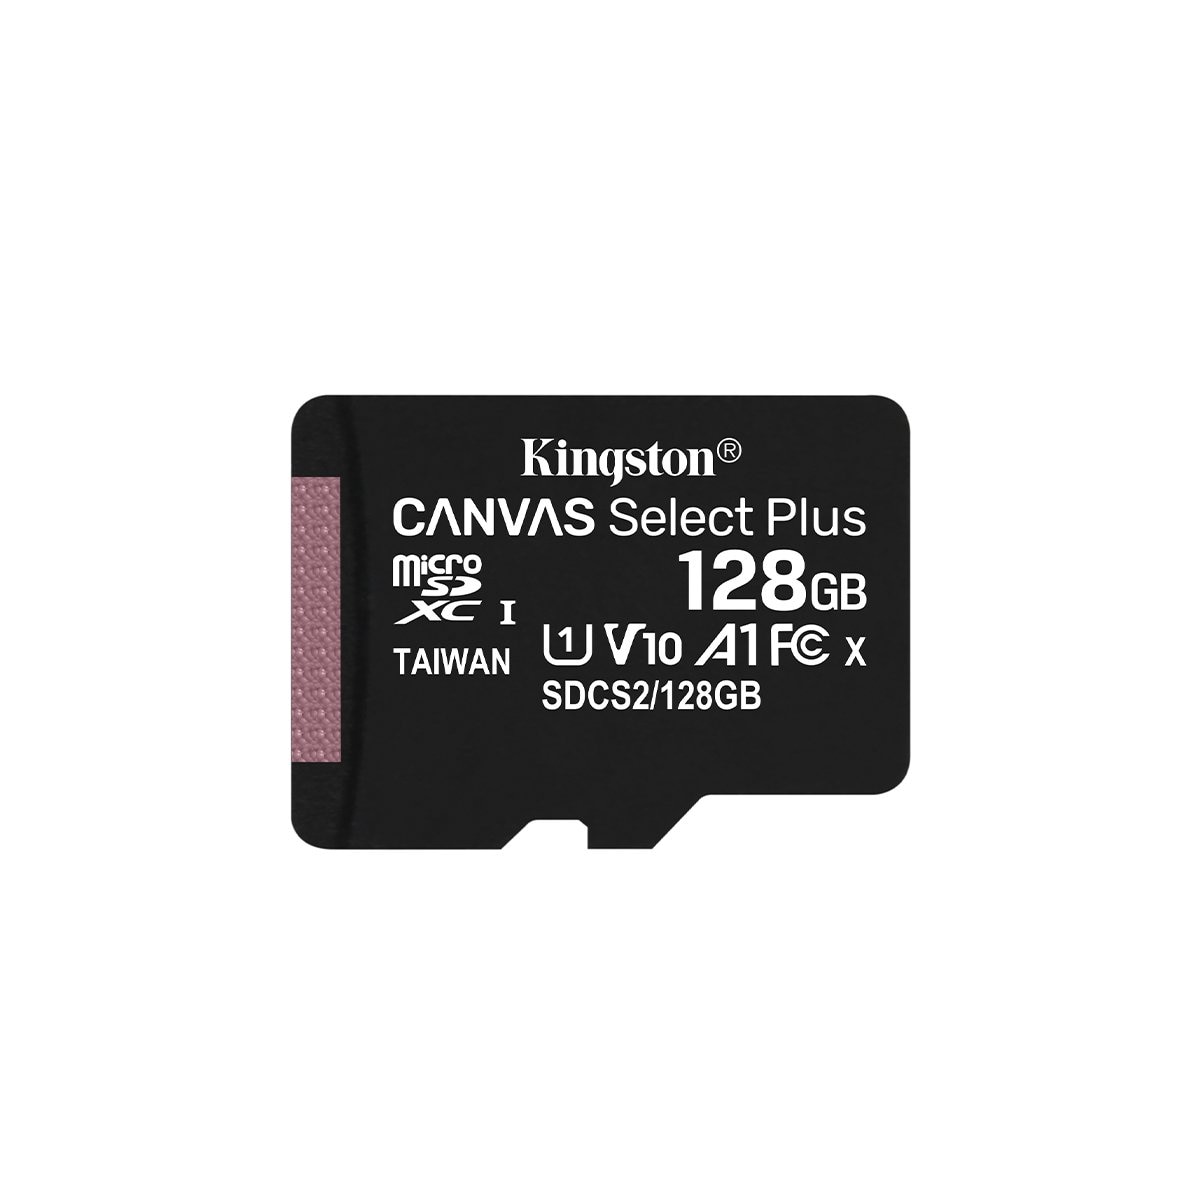 Kit de Adaptador y Micro Sd C10 Plus 128Gb Kingston